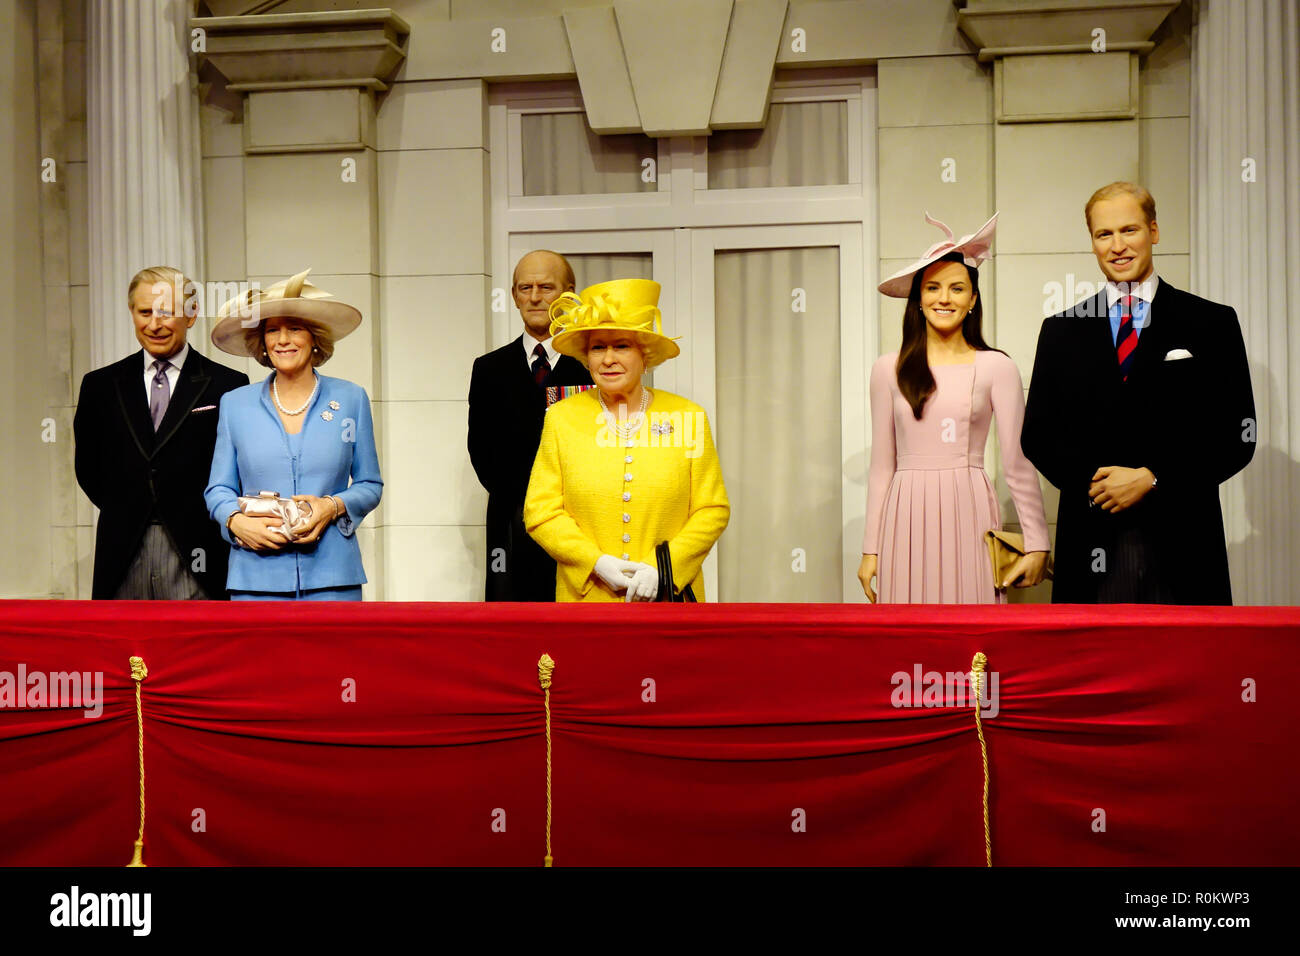 La figure de cire de la famille royale à l'attraction touristique de renommée mondiale du musée de cire de Madame Tussauds à Londres, Royaume-Uni. Banque D'Images